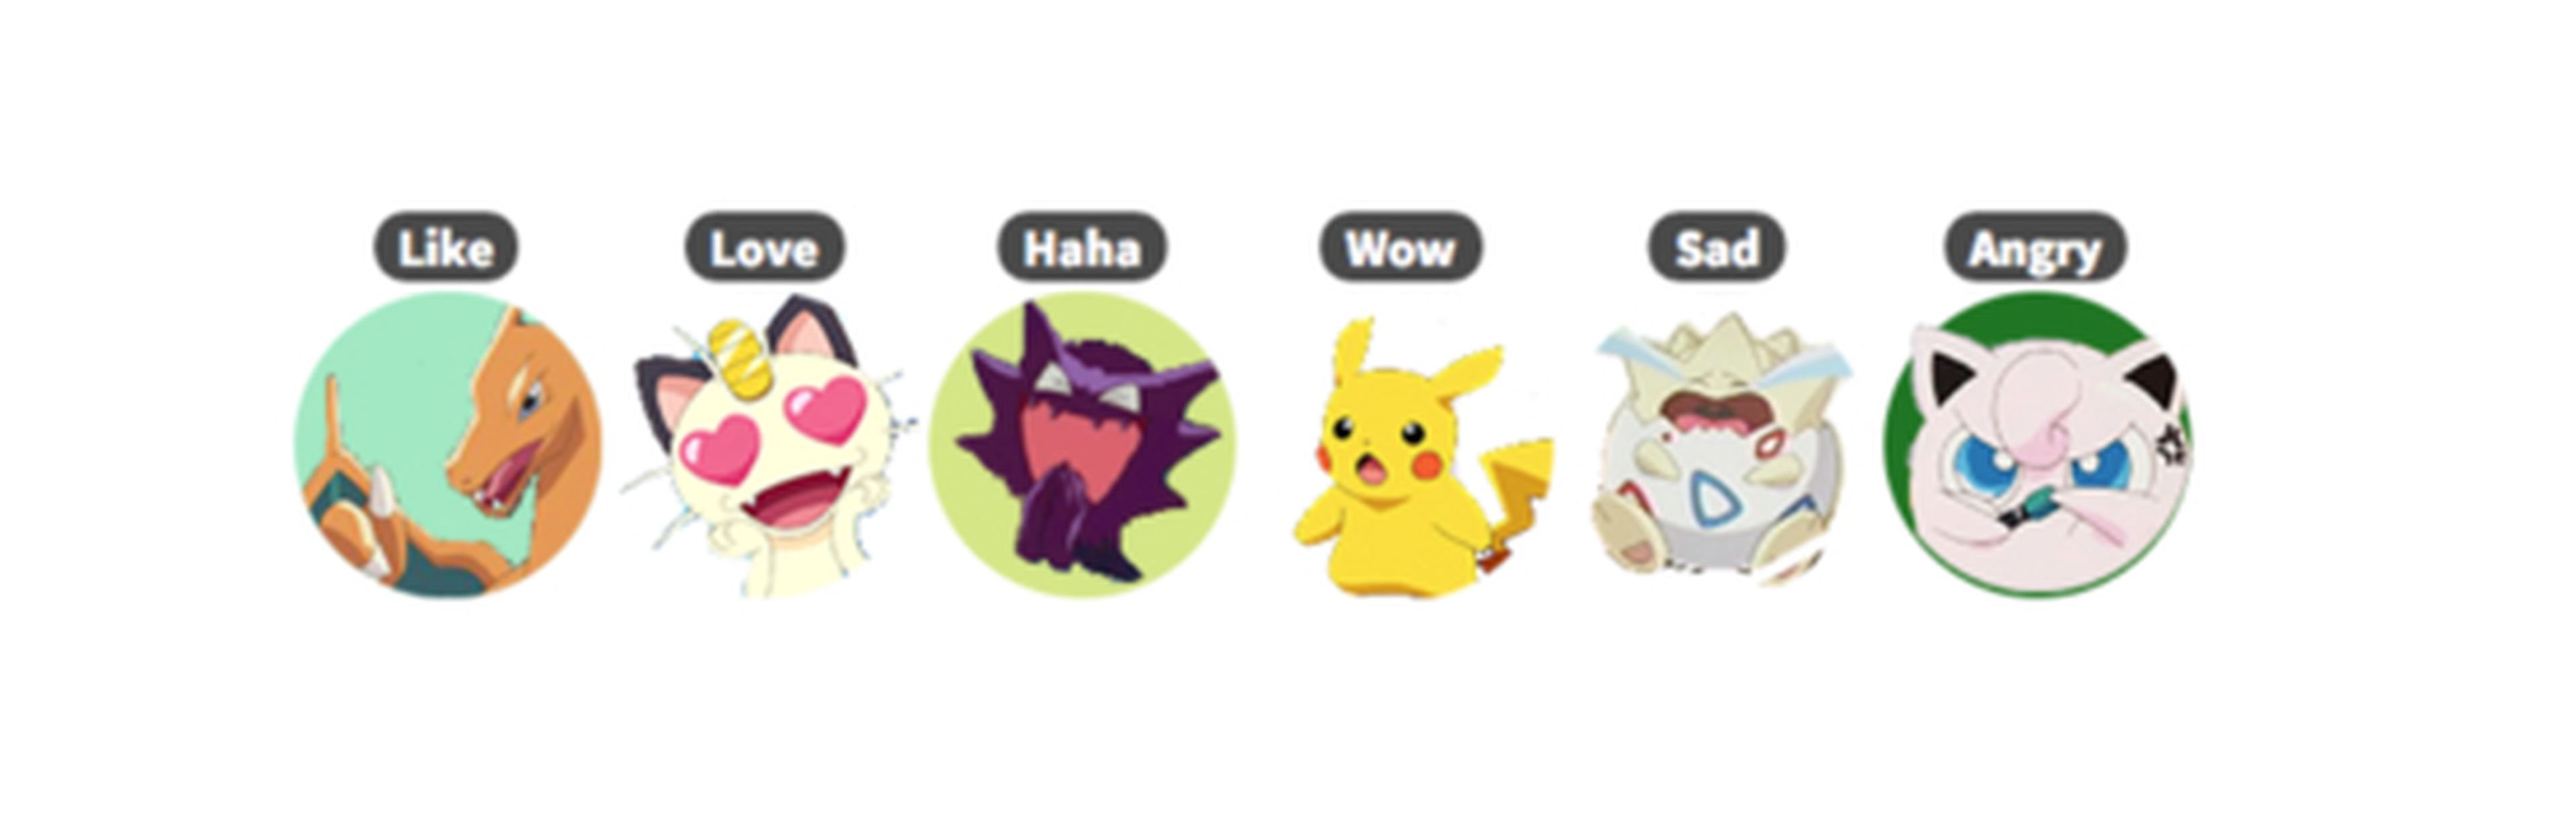 Pokémon - Facebook permite utilizar reacciones Pokémon gracias a una nueva extensión